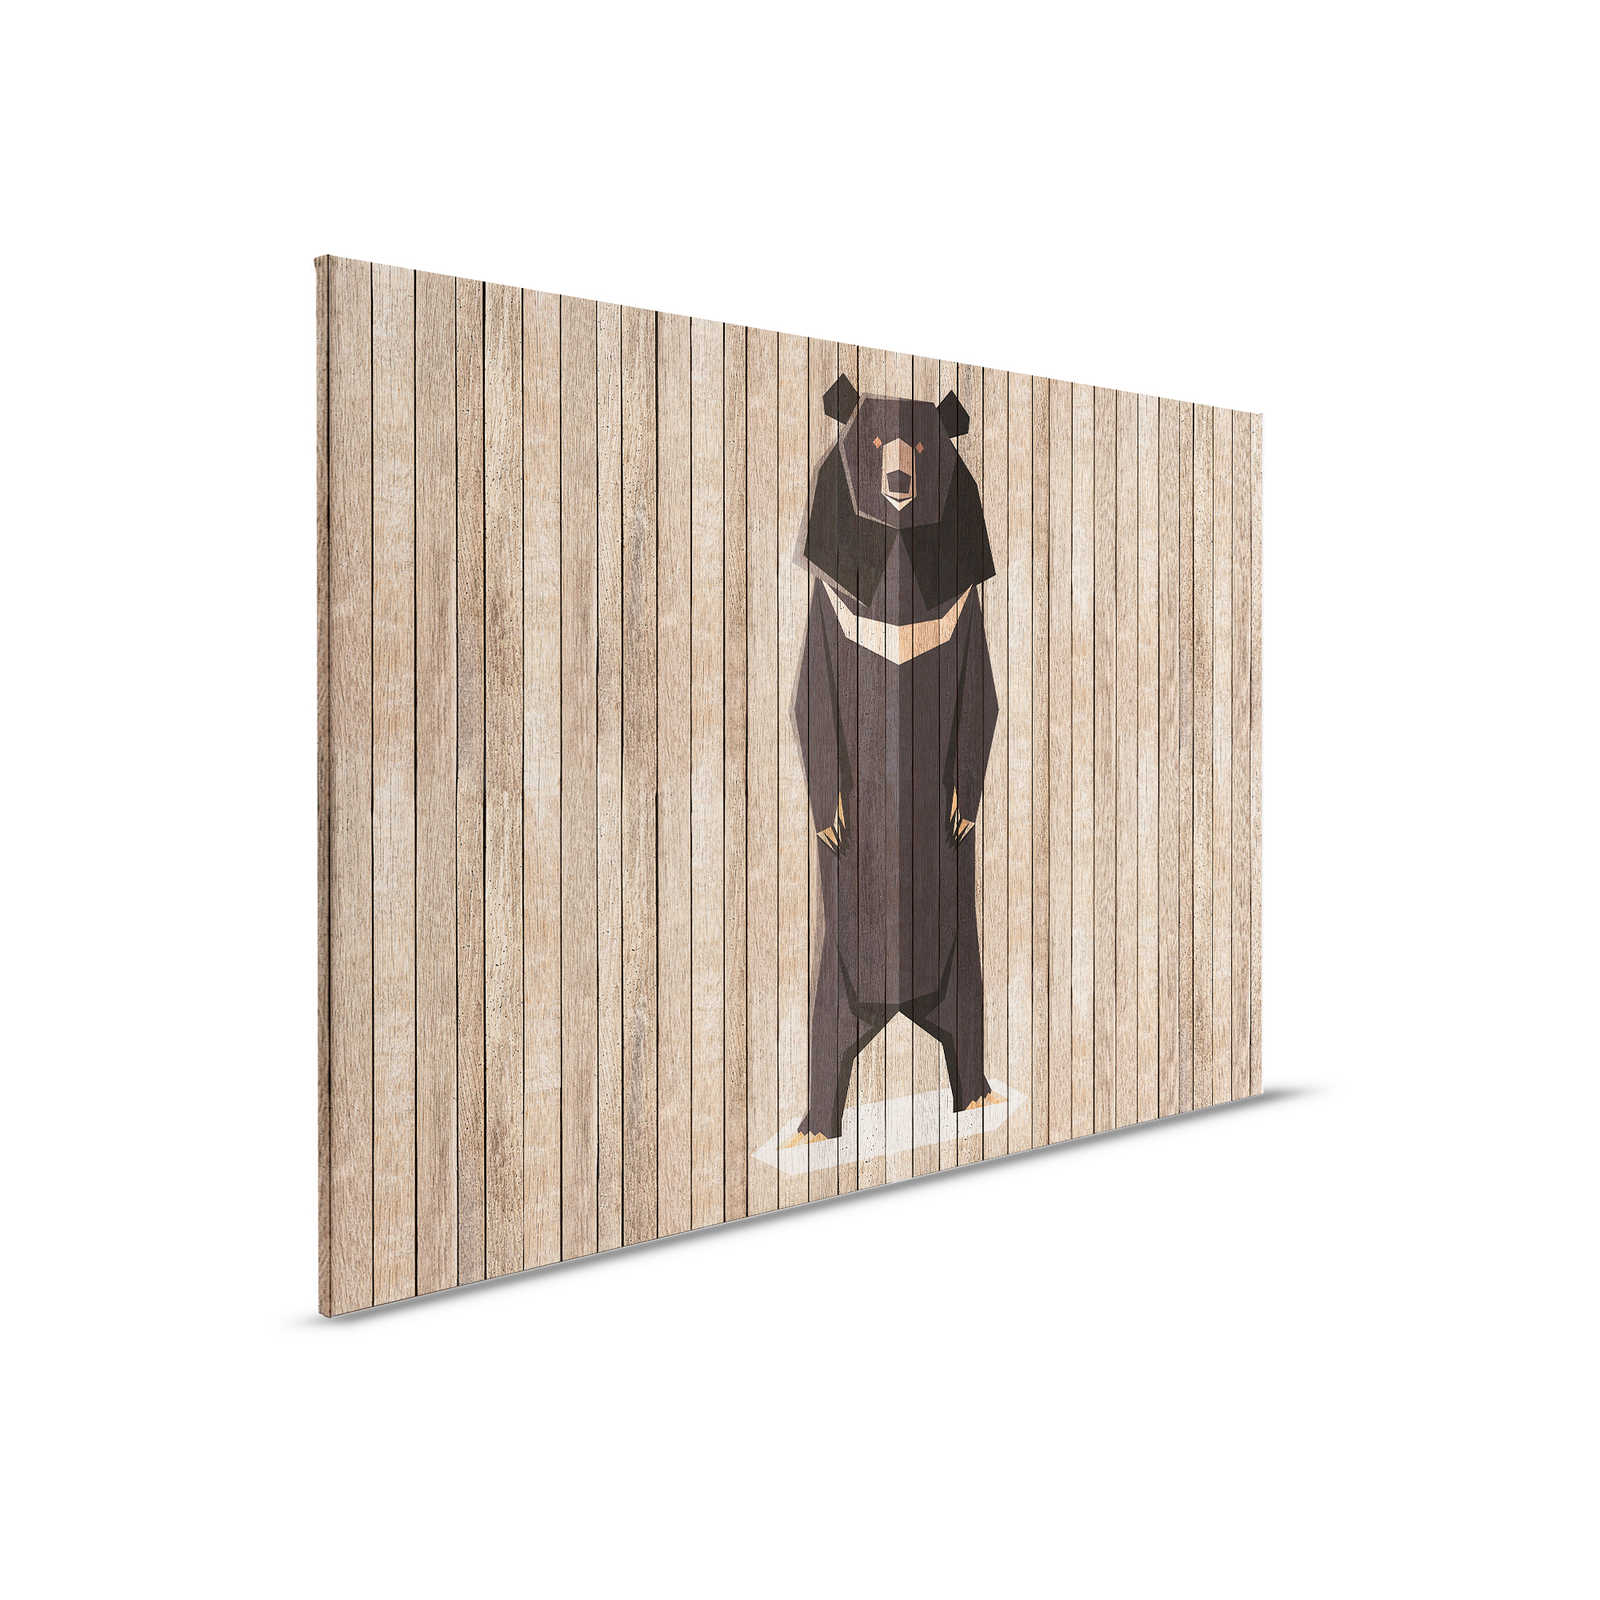 Born to Be Wild 1 - Toile panneau avec ours - Panneaux de bois large - 0,90 m x 0,60 m
